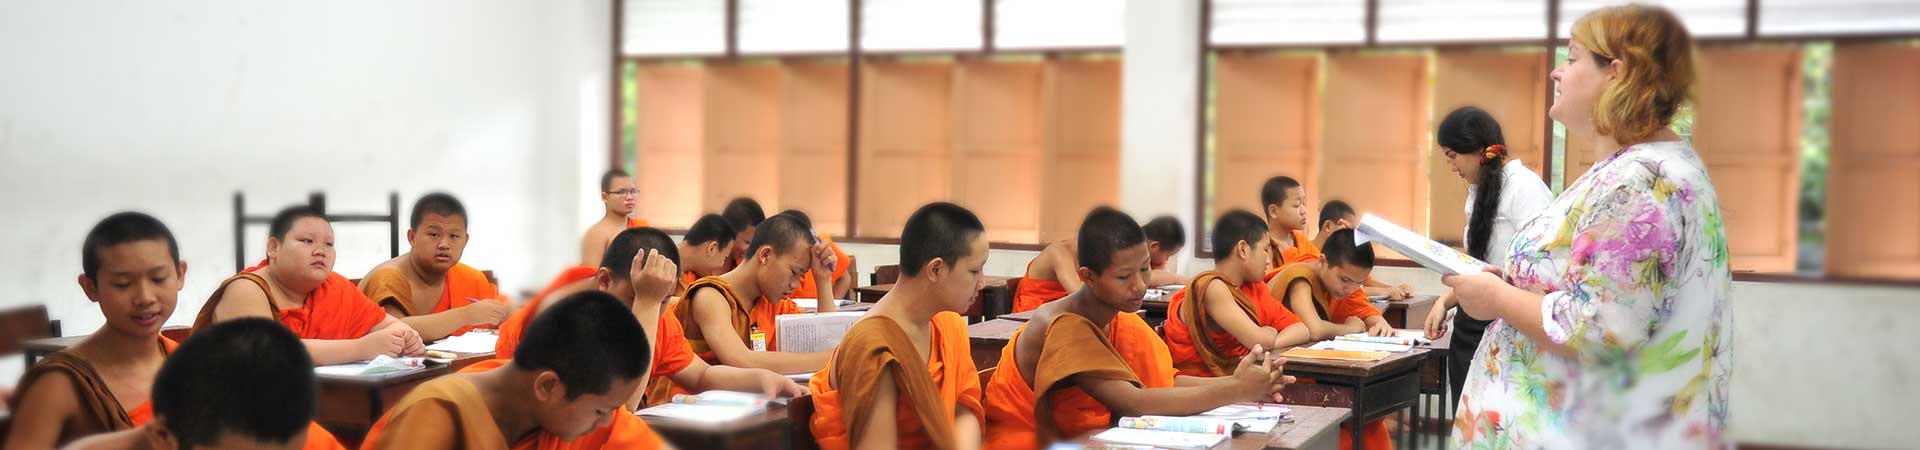 Voluntariado enseñando inglés a monjes en Chiang Mai Tailandia